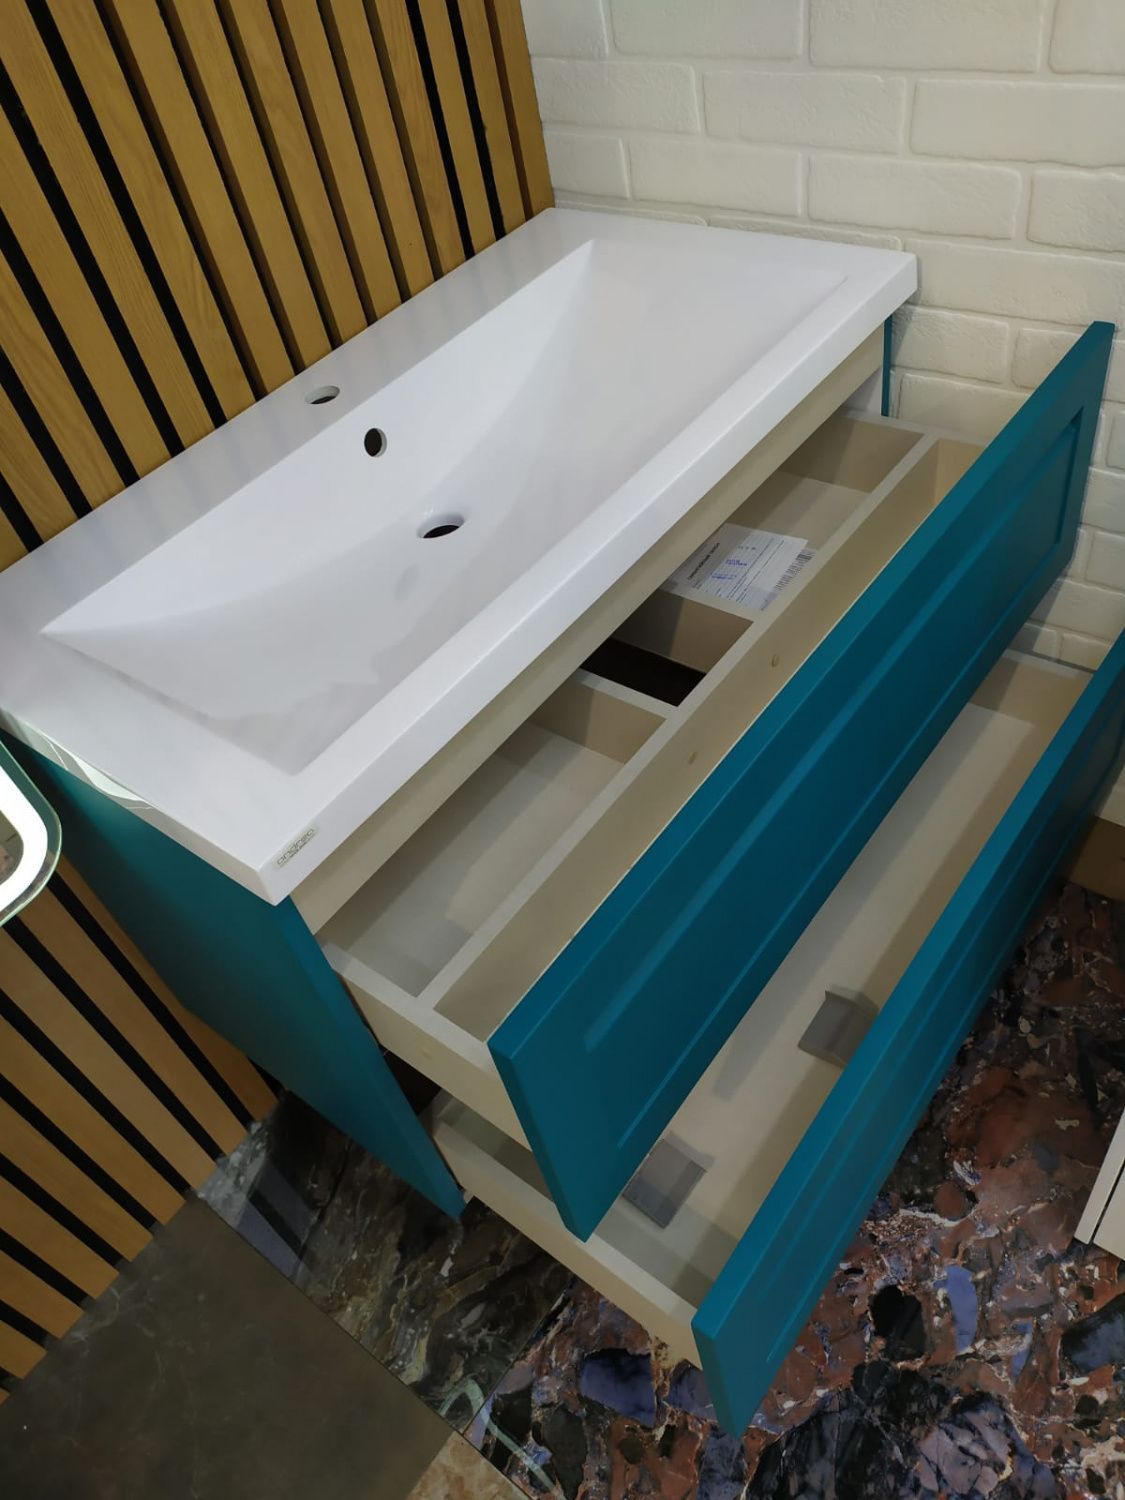 Мебель для ванной Art&Max Platino 90 см бирюзовый матовый